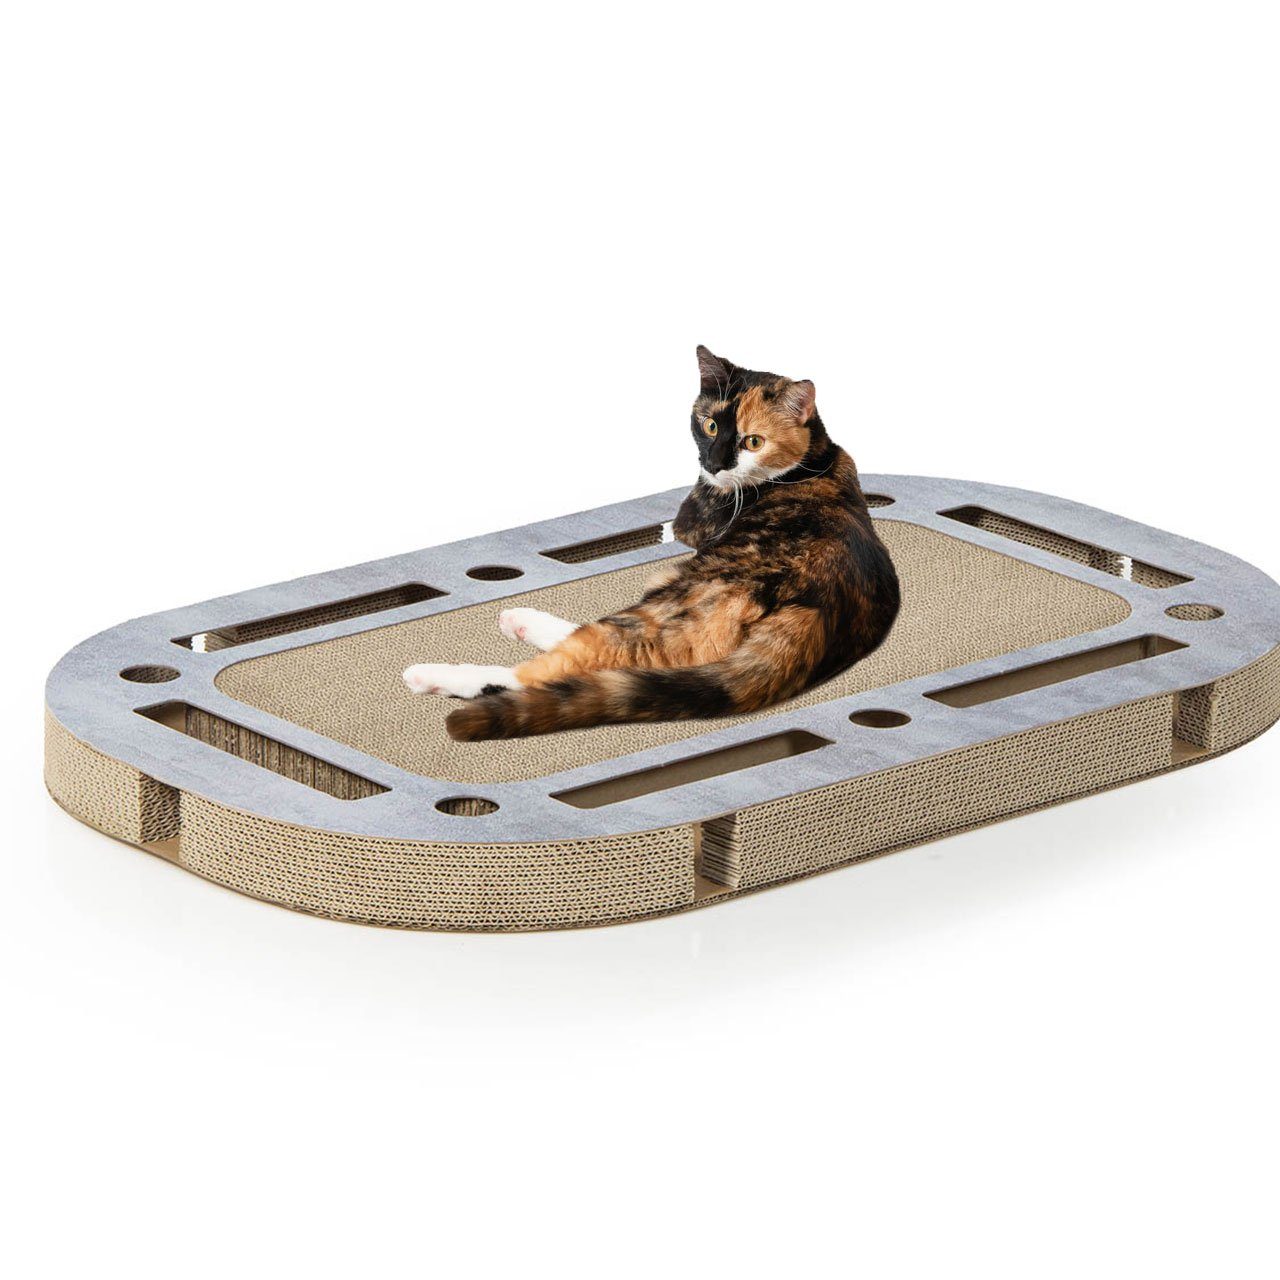 Canadian Cat Company Kratzbrett PlayPlate XL, (betonoptik, ca. 85 x 54 x 5,8 cm), mit integrierter Kratzpappe Katzenspielzeug